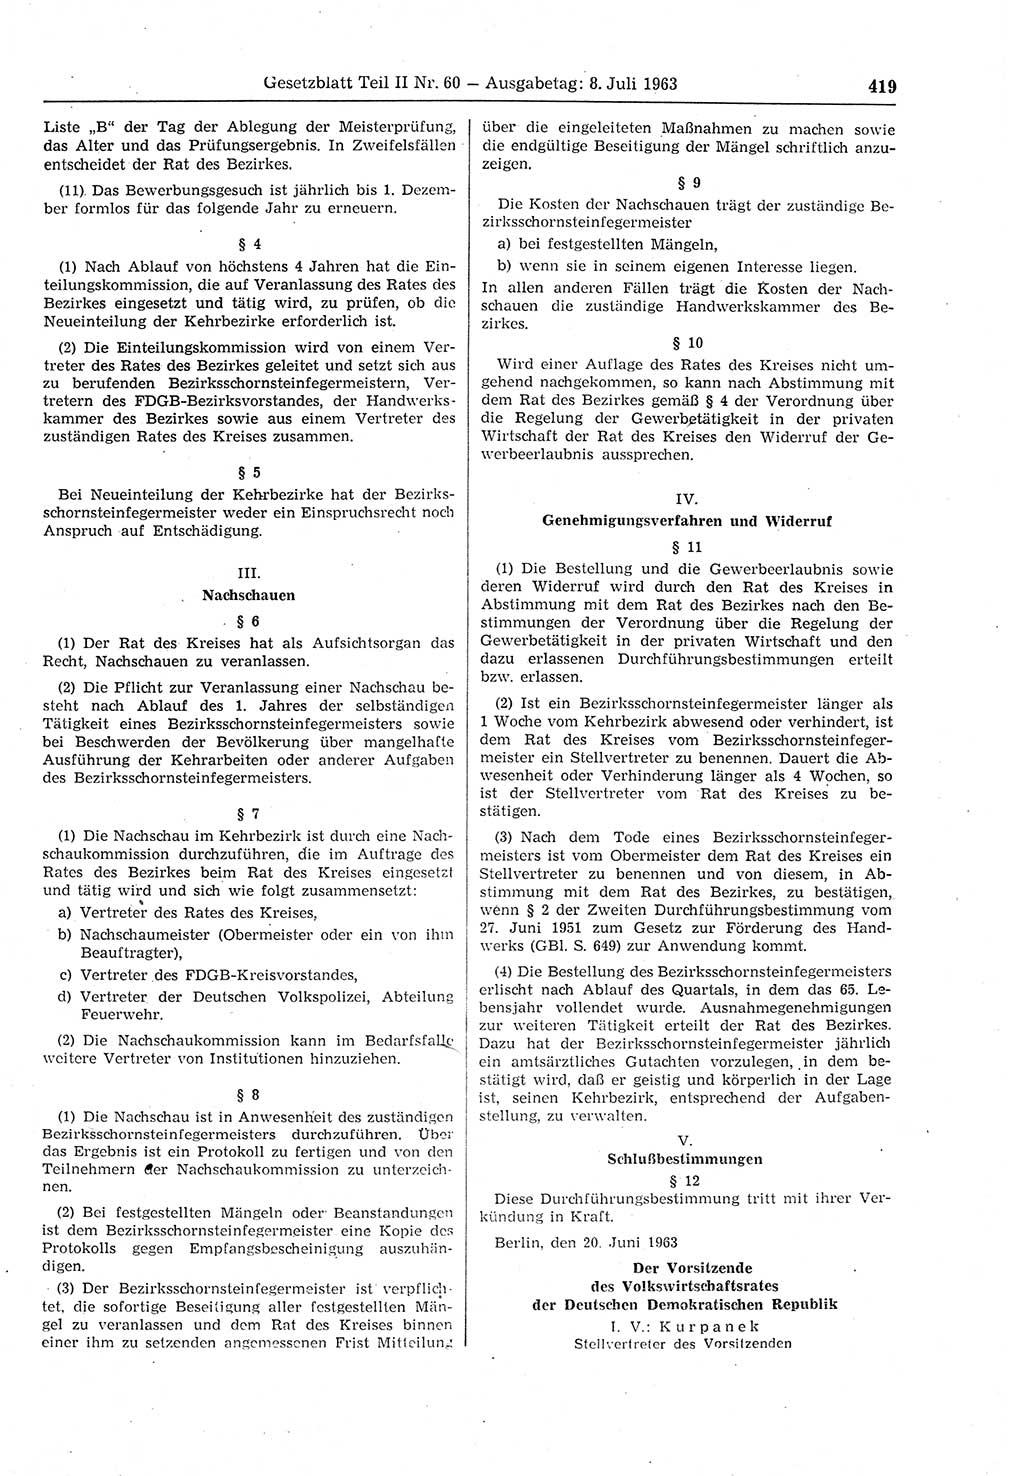 Gesetzblatt (GBl.) der Deutschen Demokratischen Republik (DDR) Teil ⅠⅠ 1963, Seite 419 (GBl. DDR ⅠⅠ 1963, S. 419)